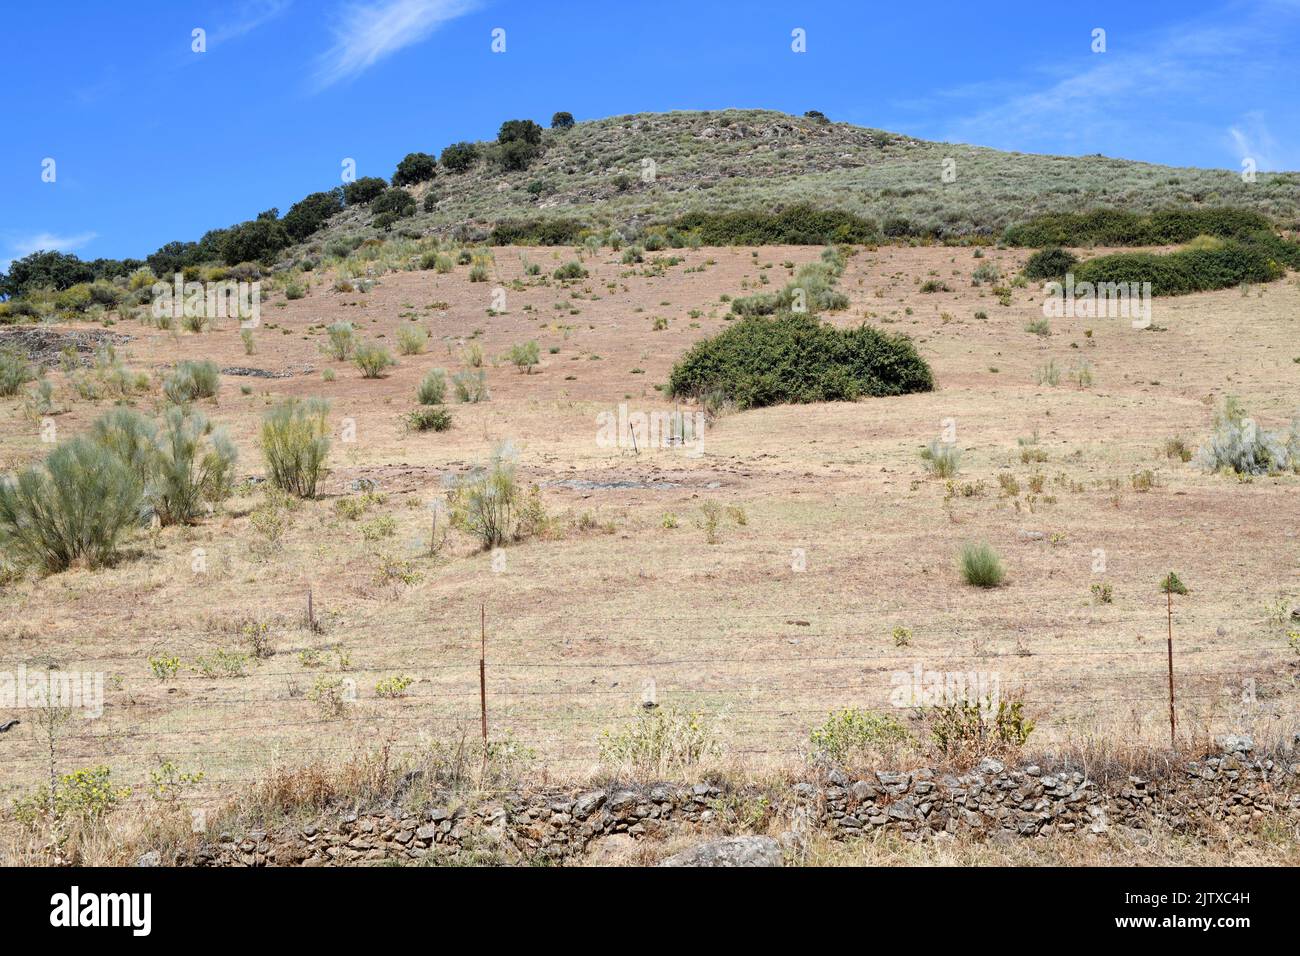 Batholith (granite dome). This photo was taken in Cerro de San Cristobal, Logrosan, Caceres, Extremadura, Spain. Stock Photo